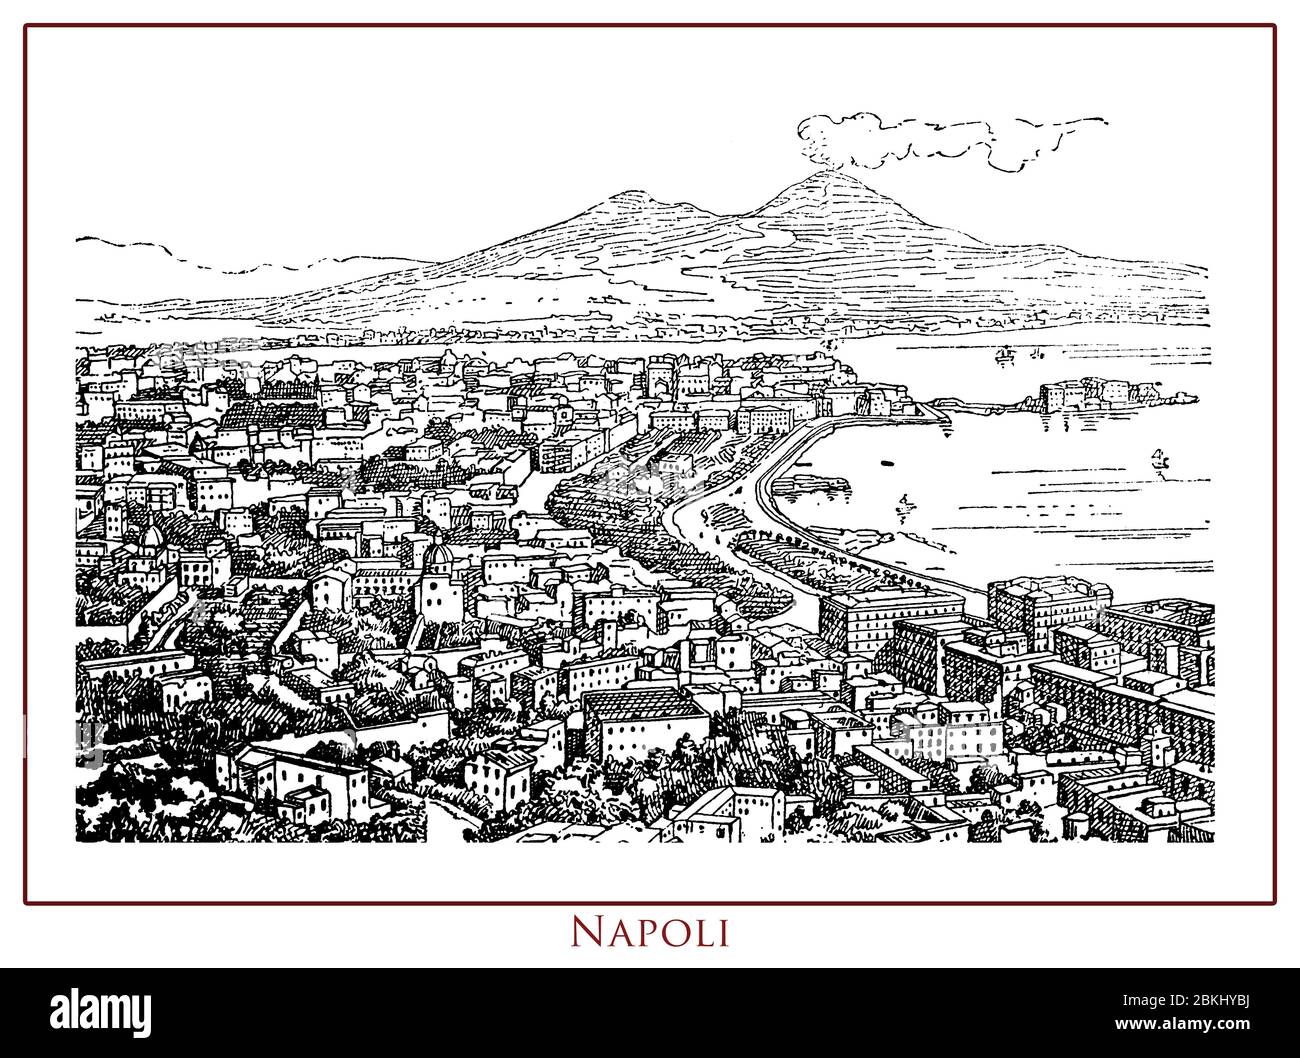 Vintage illustrierte Tabelle mit einem Panoramablick auf die Stadt Neapel (Neapel) Hauptstadt der Region Kampanien in Süditalien. Die Stadt ist ein wichtiger mediterraner Hafen in der Nähe des aktiven Vulkans Vesuv Stockfoto